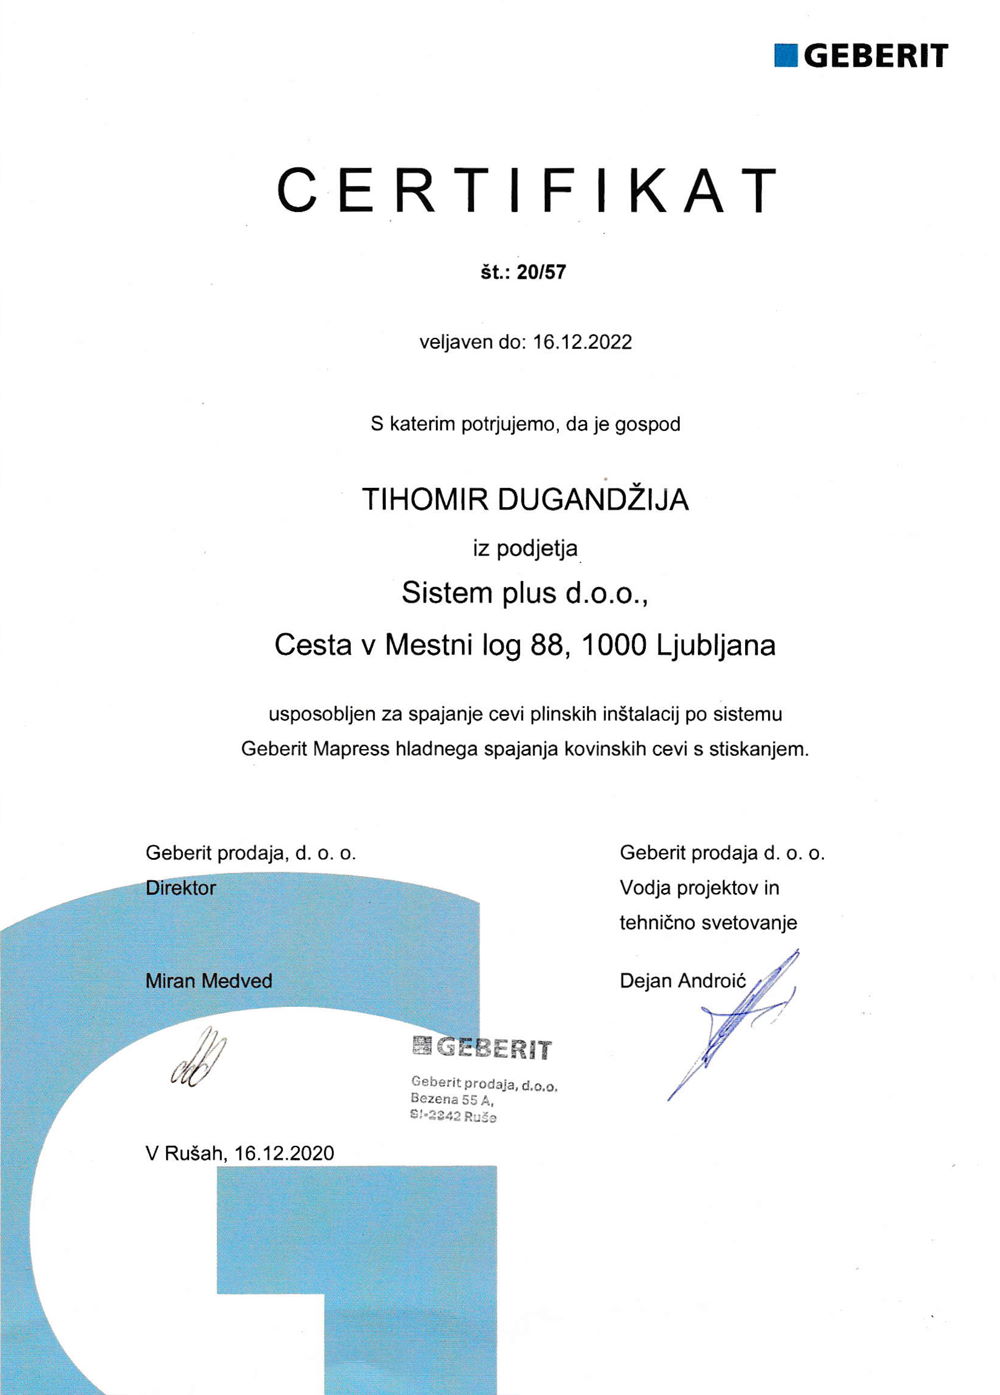 Geberit2022Certifikat